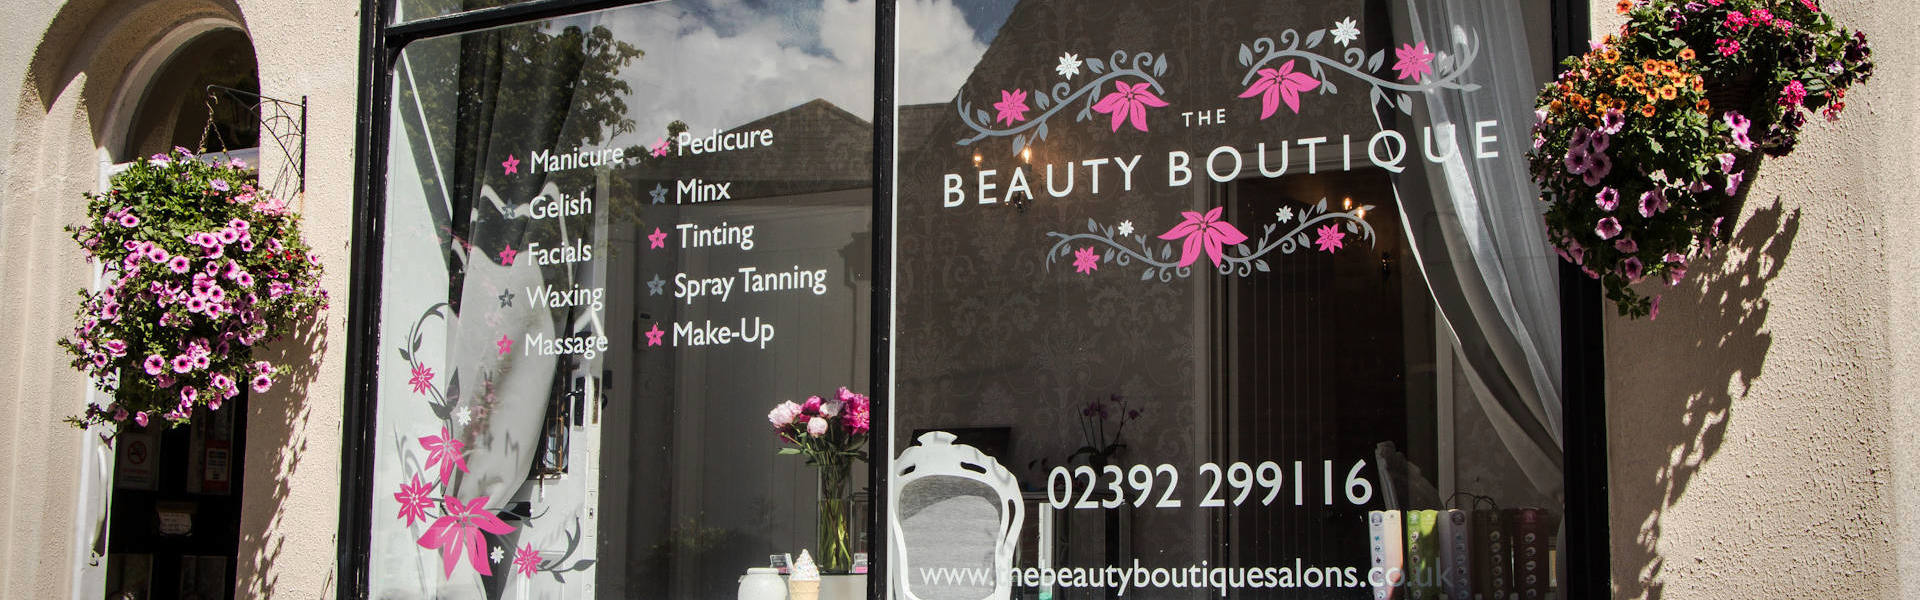 The Beauty Boutique Salon Alverstoke